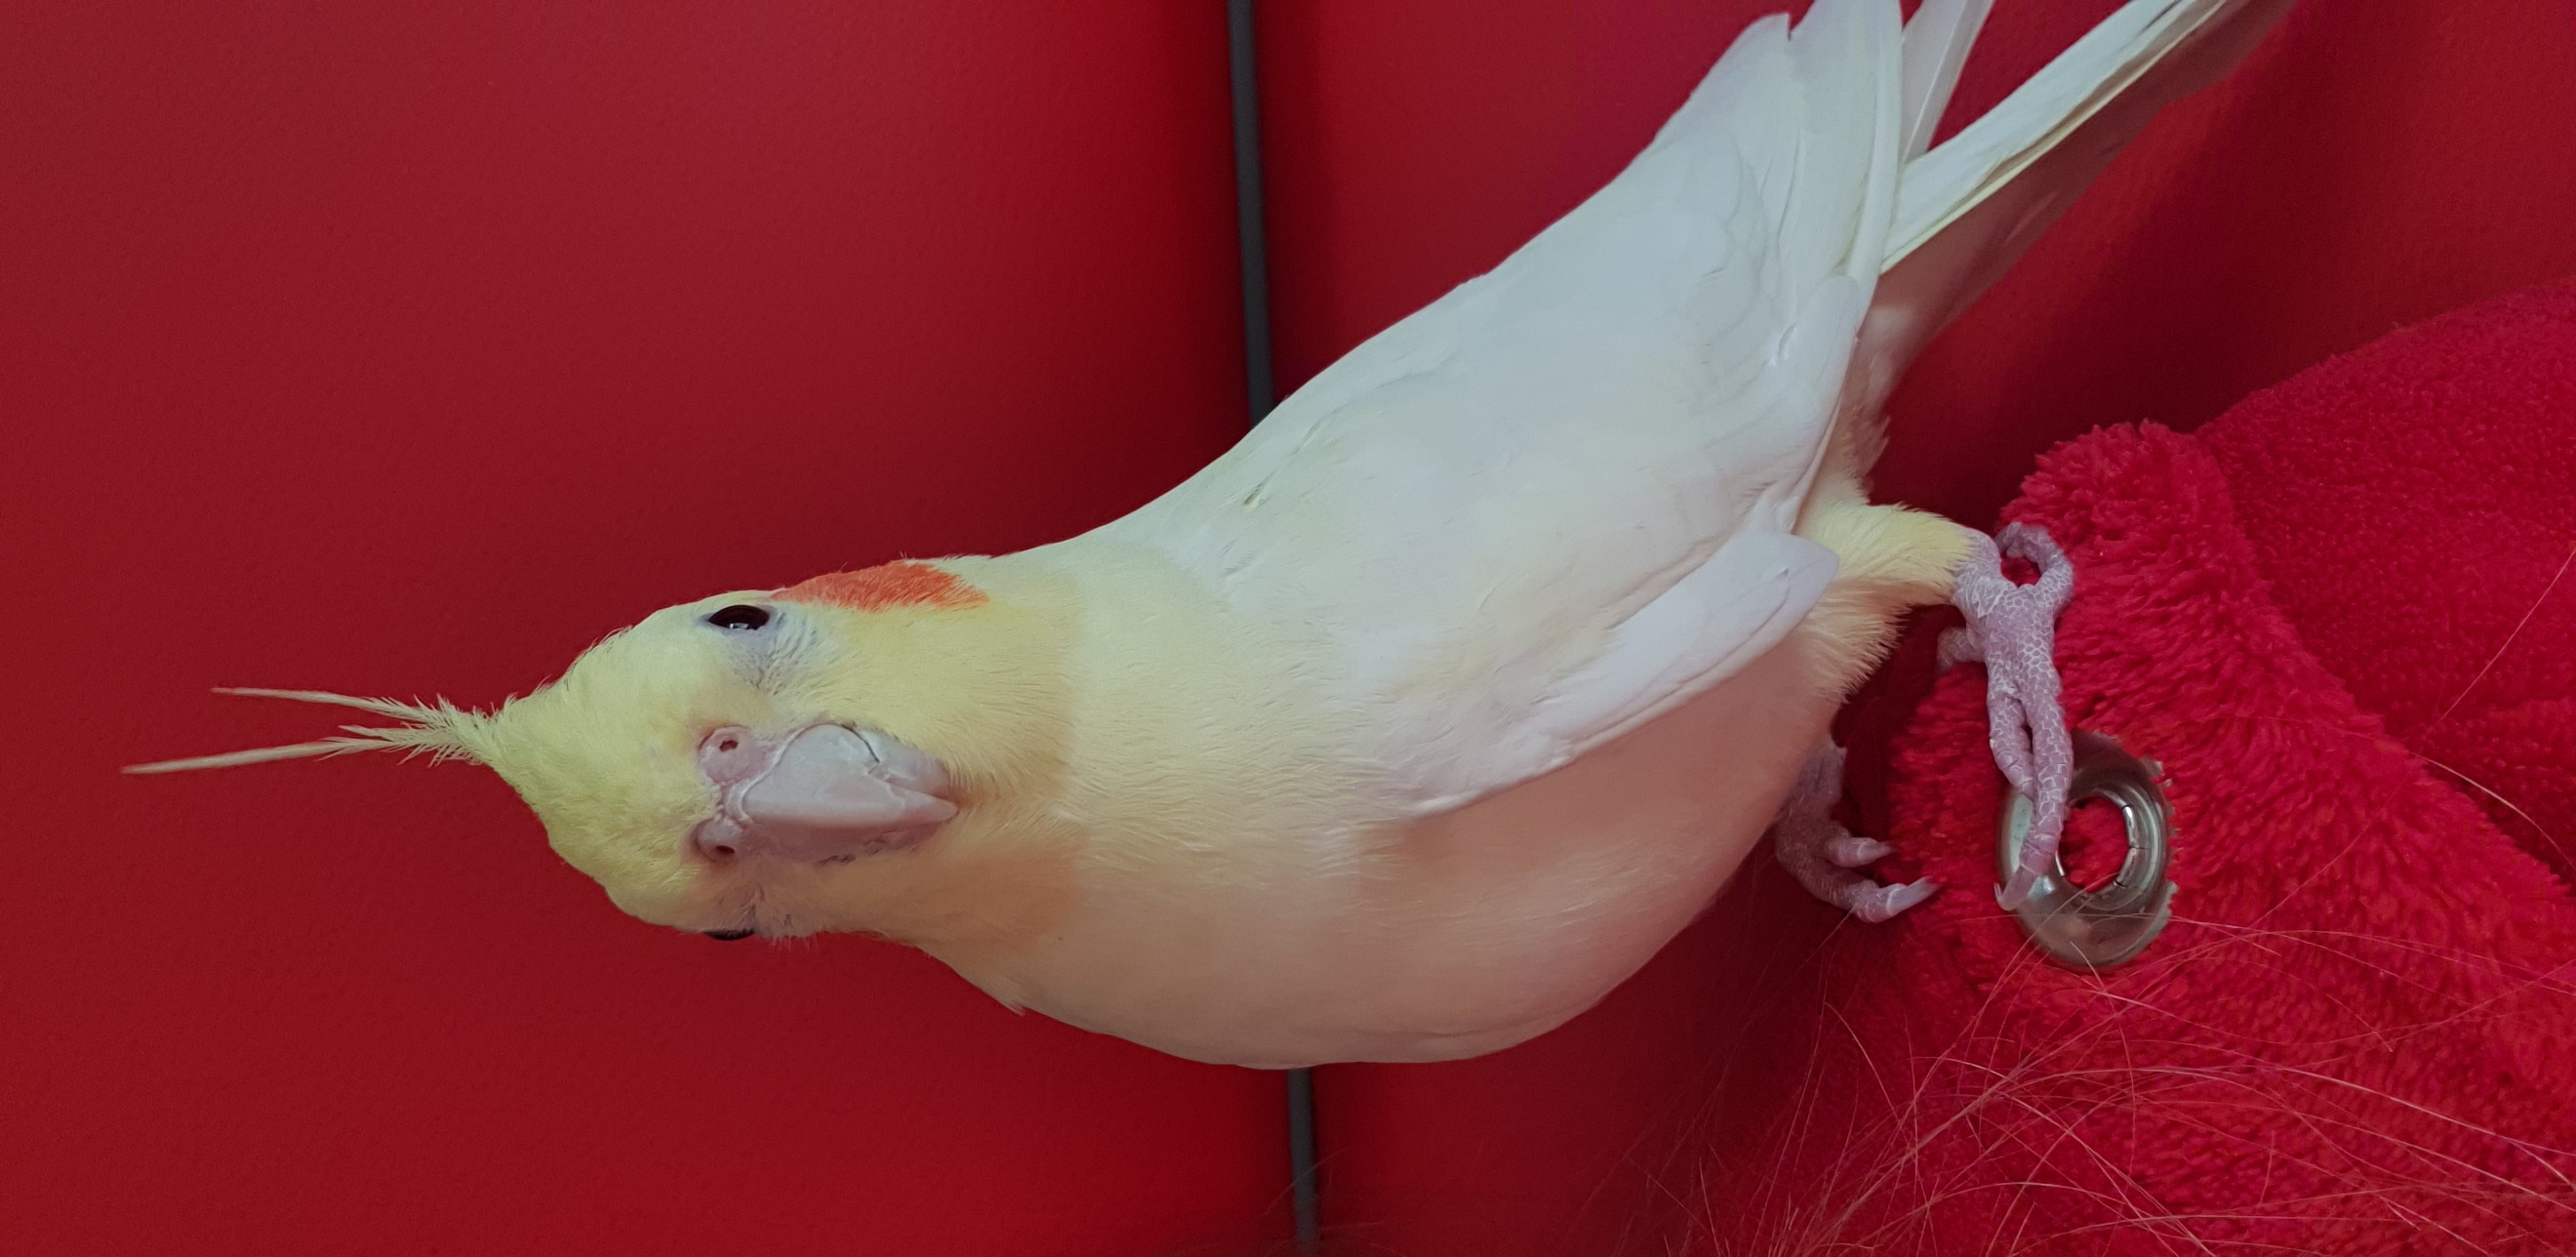 Lost & Found Bird in Lebanon: Help us Find our Cockatiel TIKI